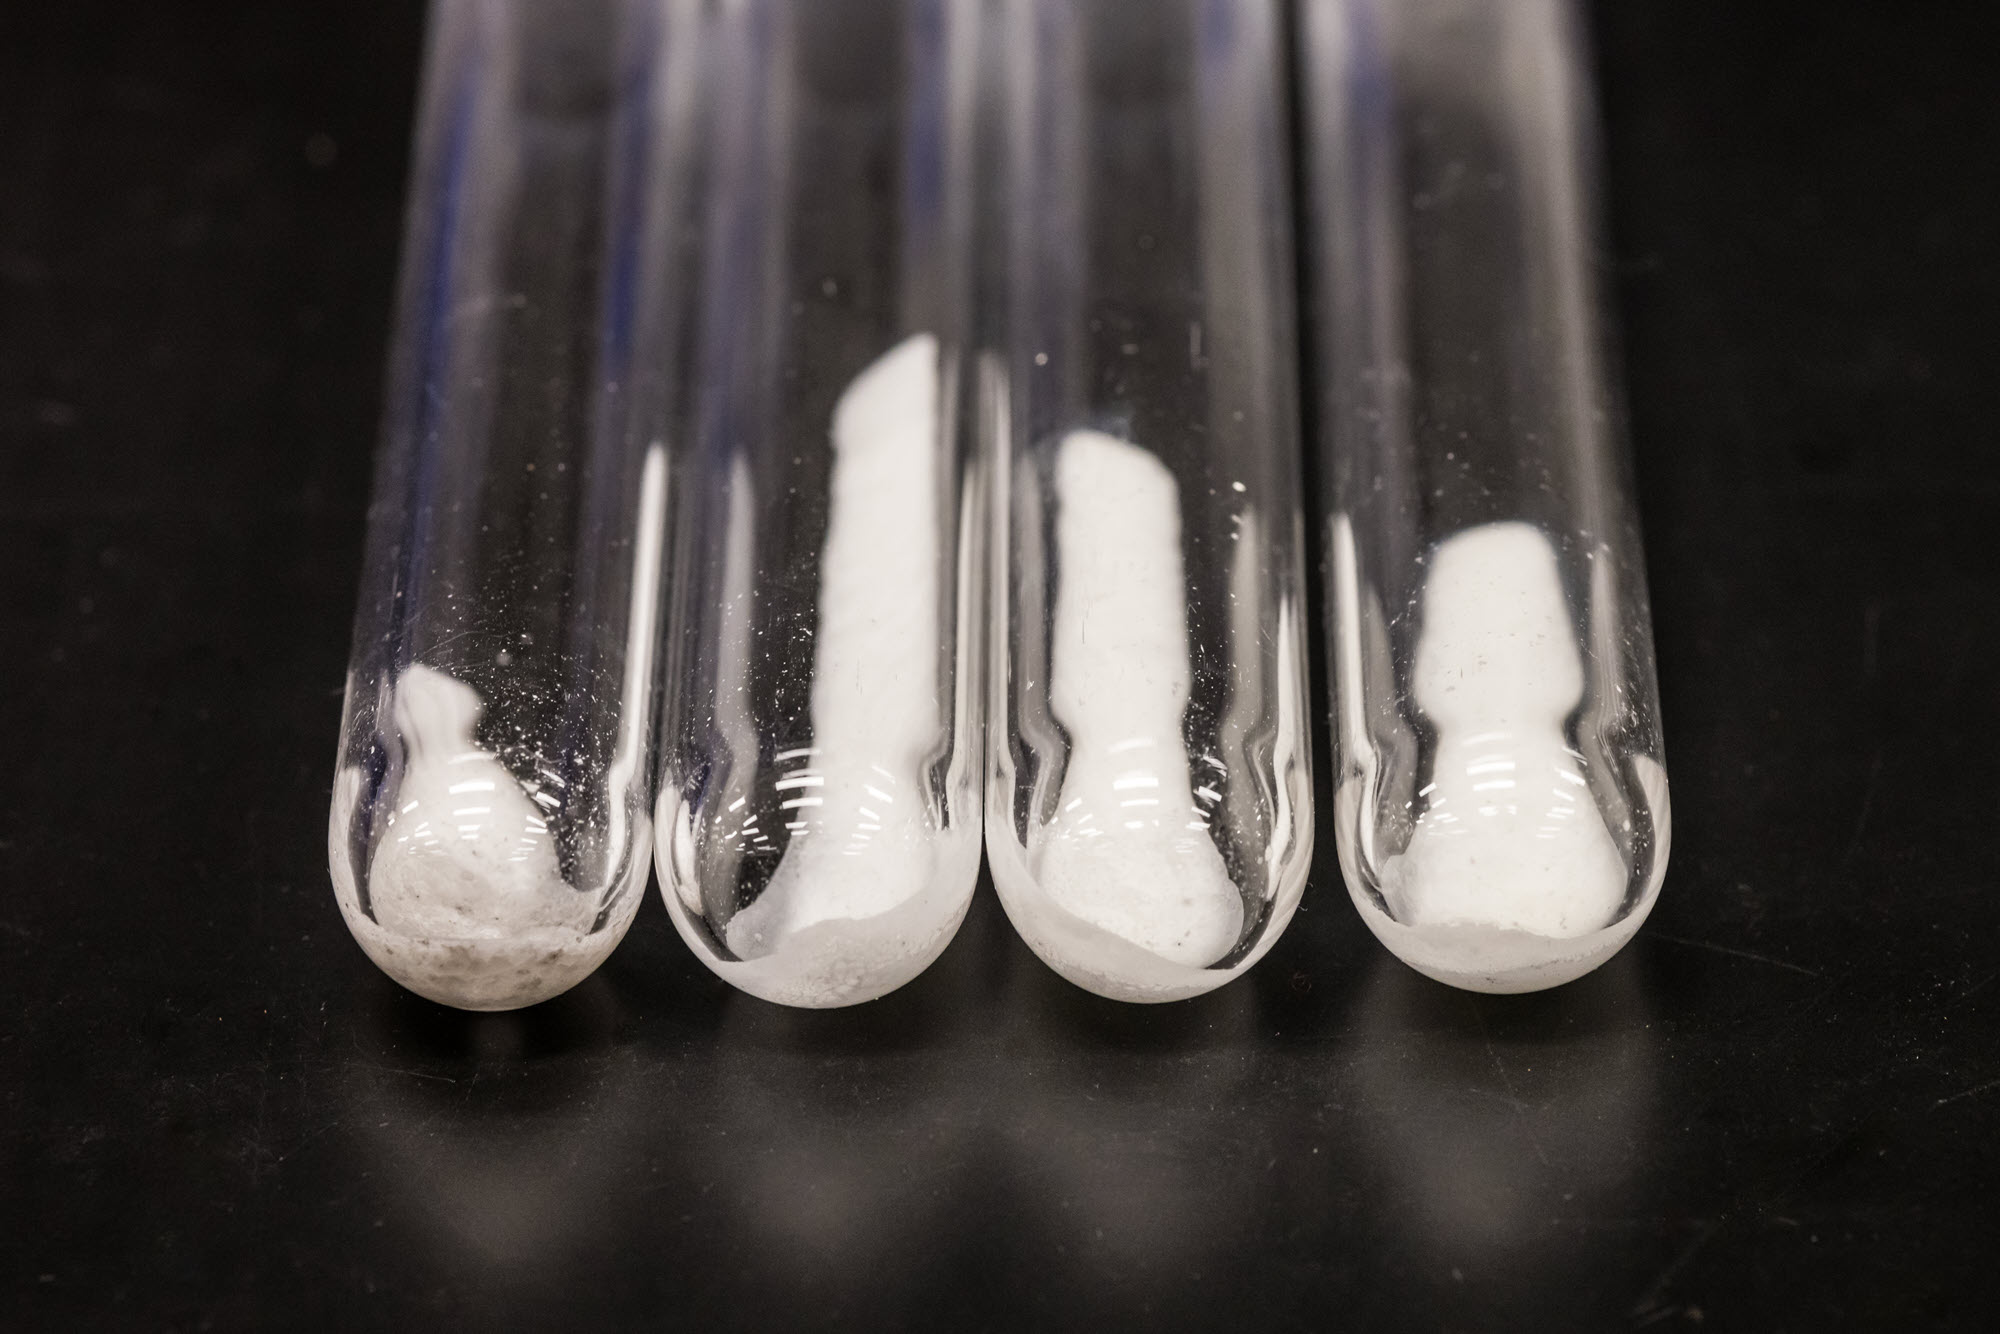 Des tubes à essai contiennent des échantillons du nouveau matériau, qui ressemble à du sel blanc fin.